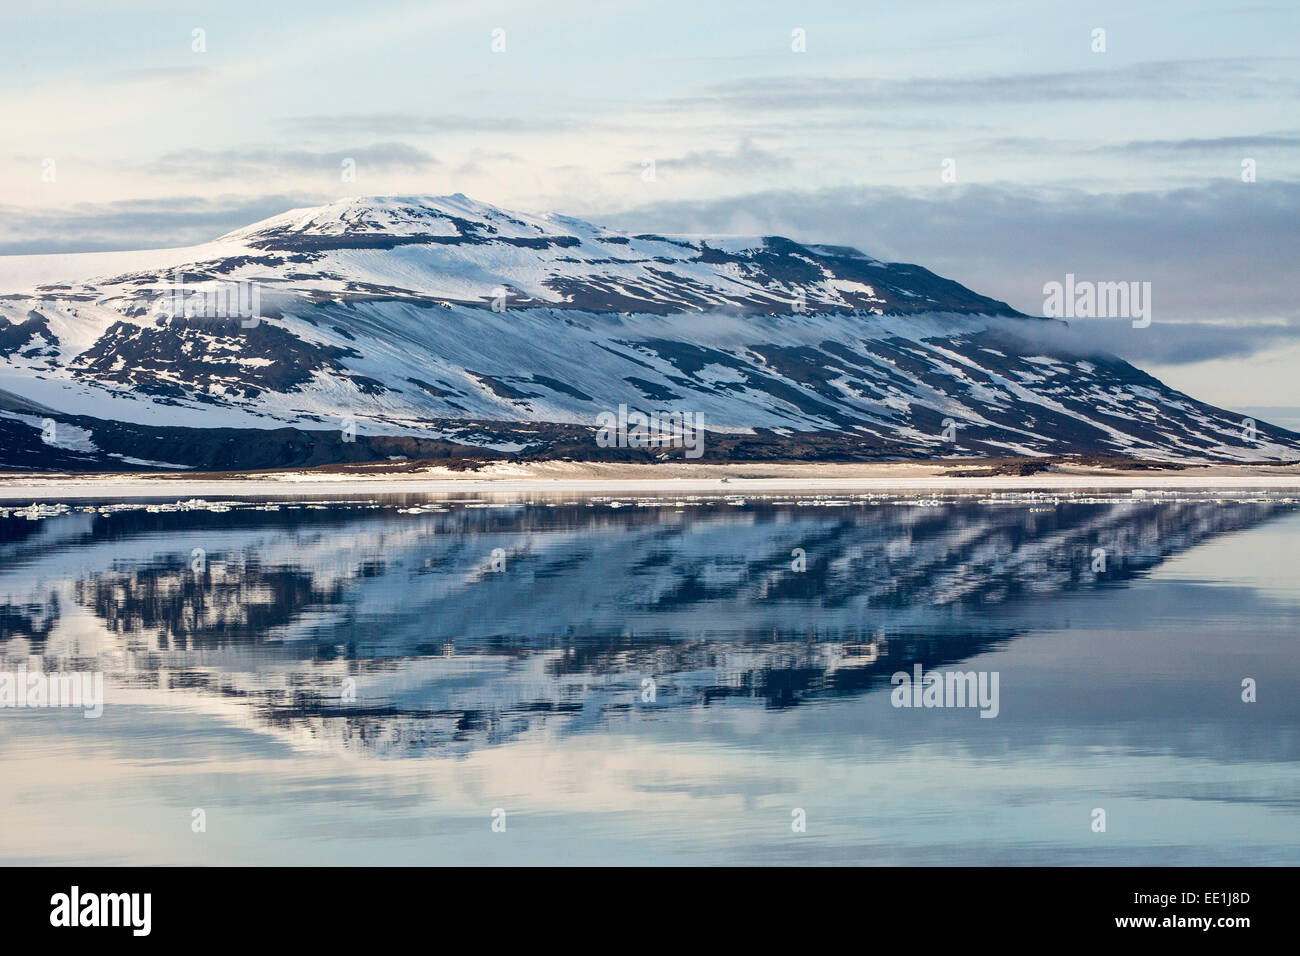 Montagne innevate si riflette nelle calme acque di Olga stretto, Svalbard artico, Norvegia, Scandinavia, Europa Foto Stock